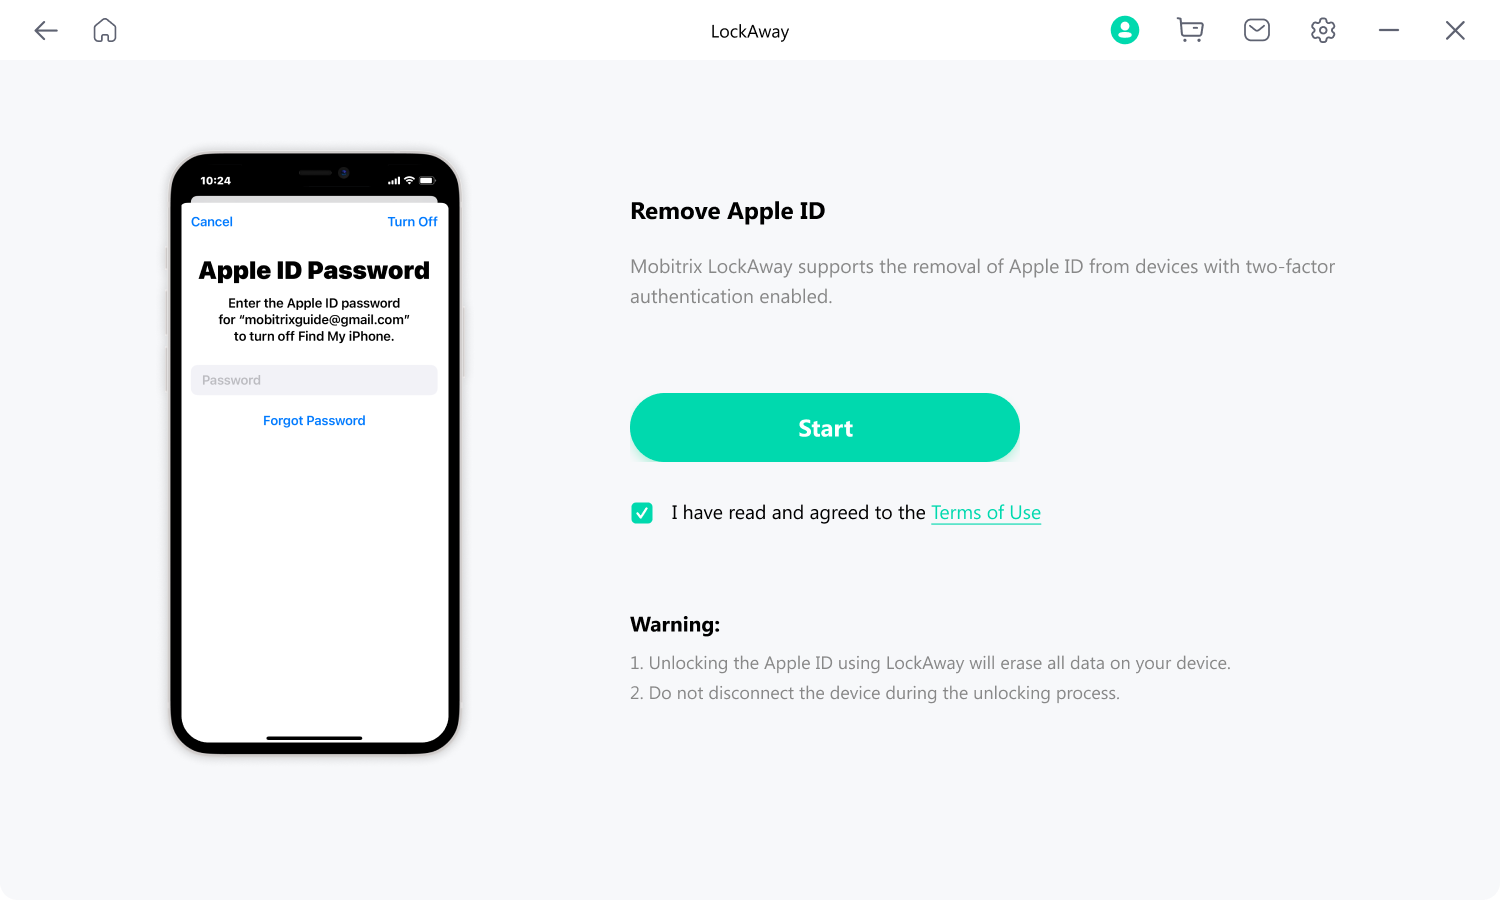 Mobitrix LockAway Click Start to Remove Apple ID